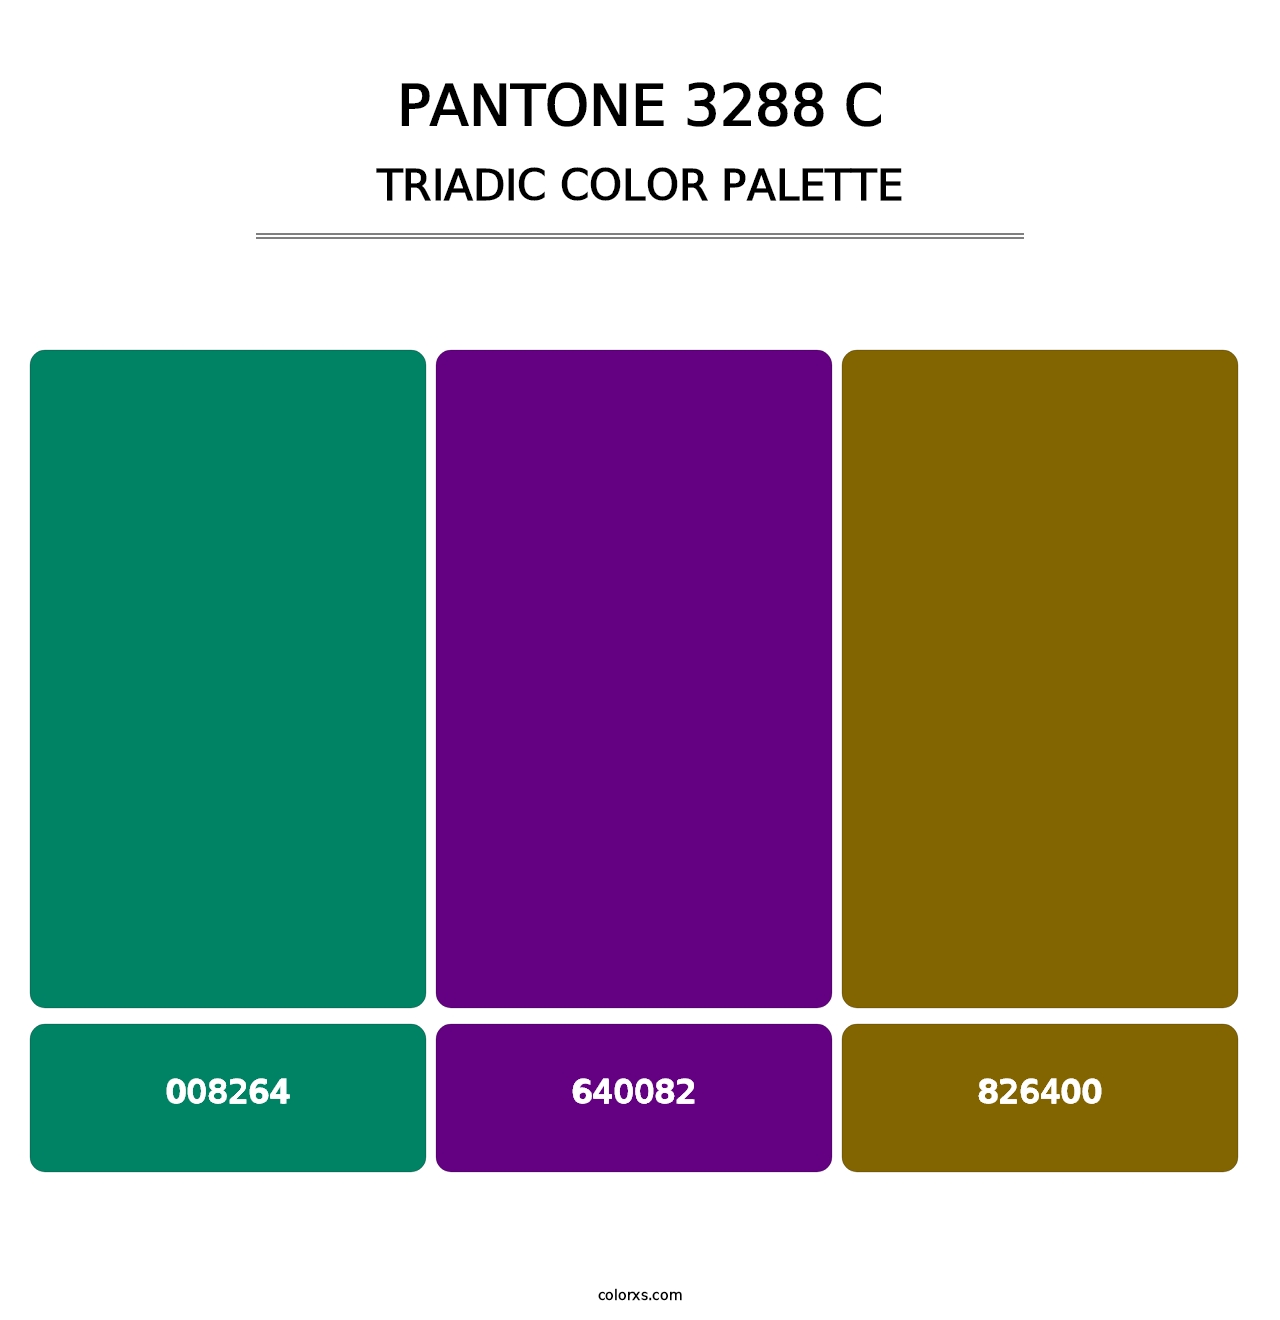 PANTONE 3288 C - Triadic Color Palette